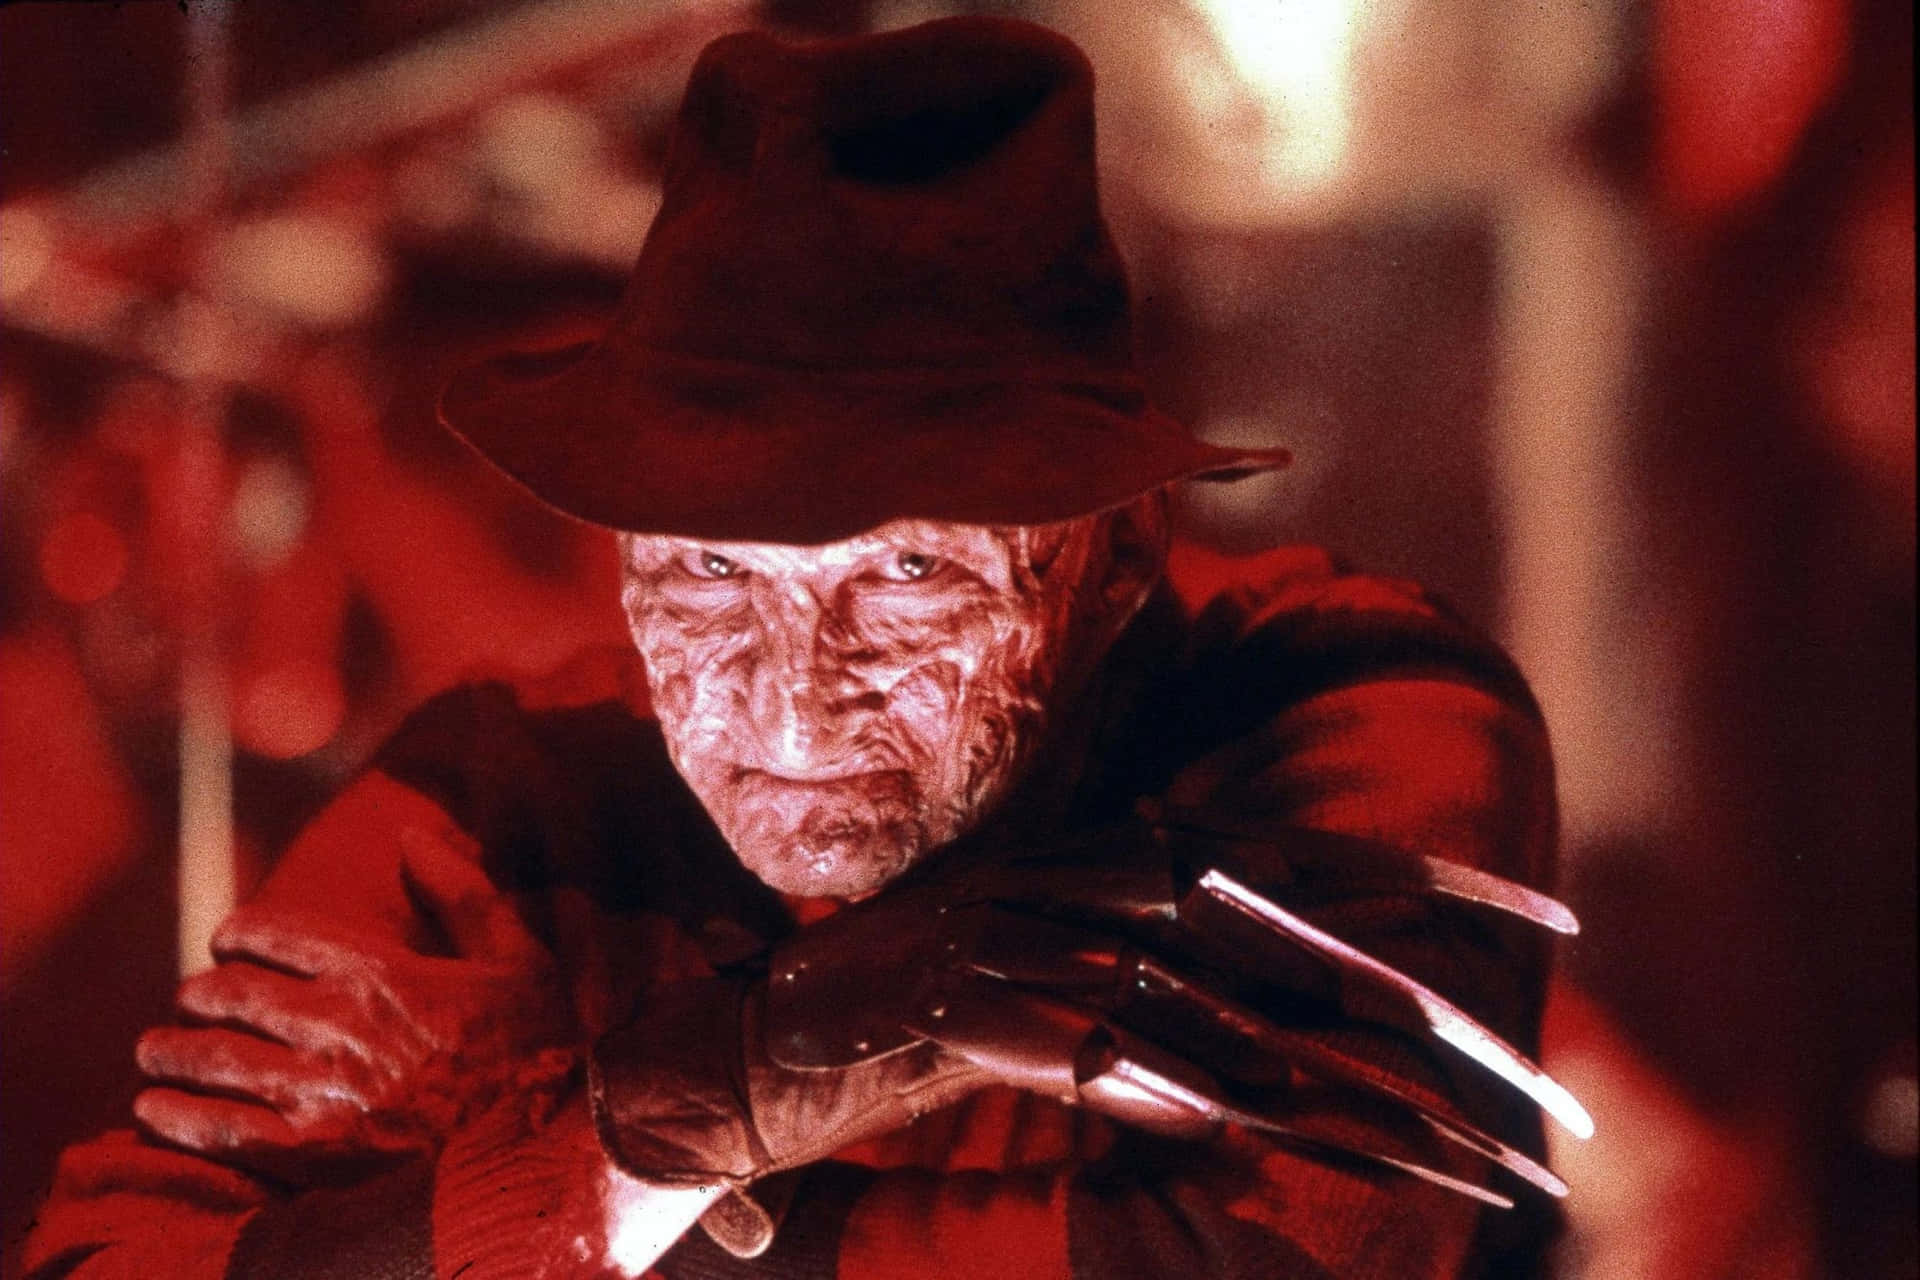 Freddy Krueger, the vengeful dream-stalker